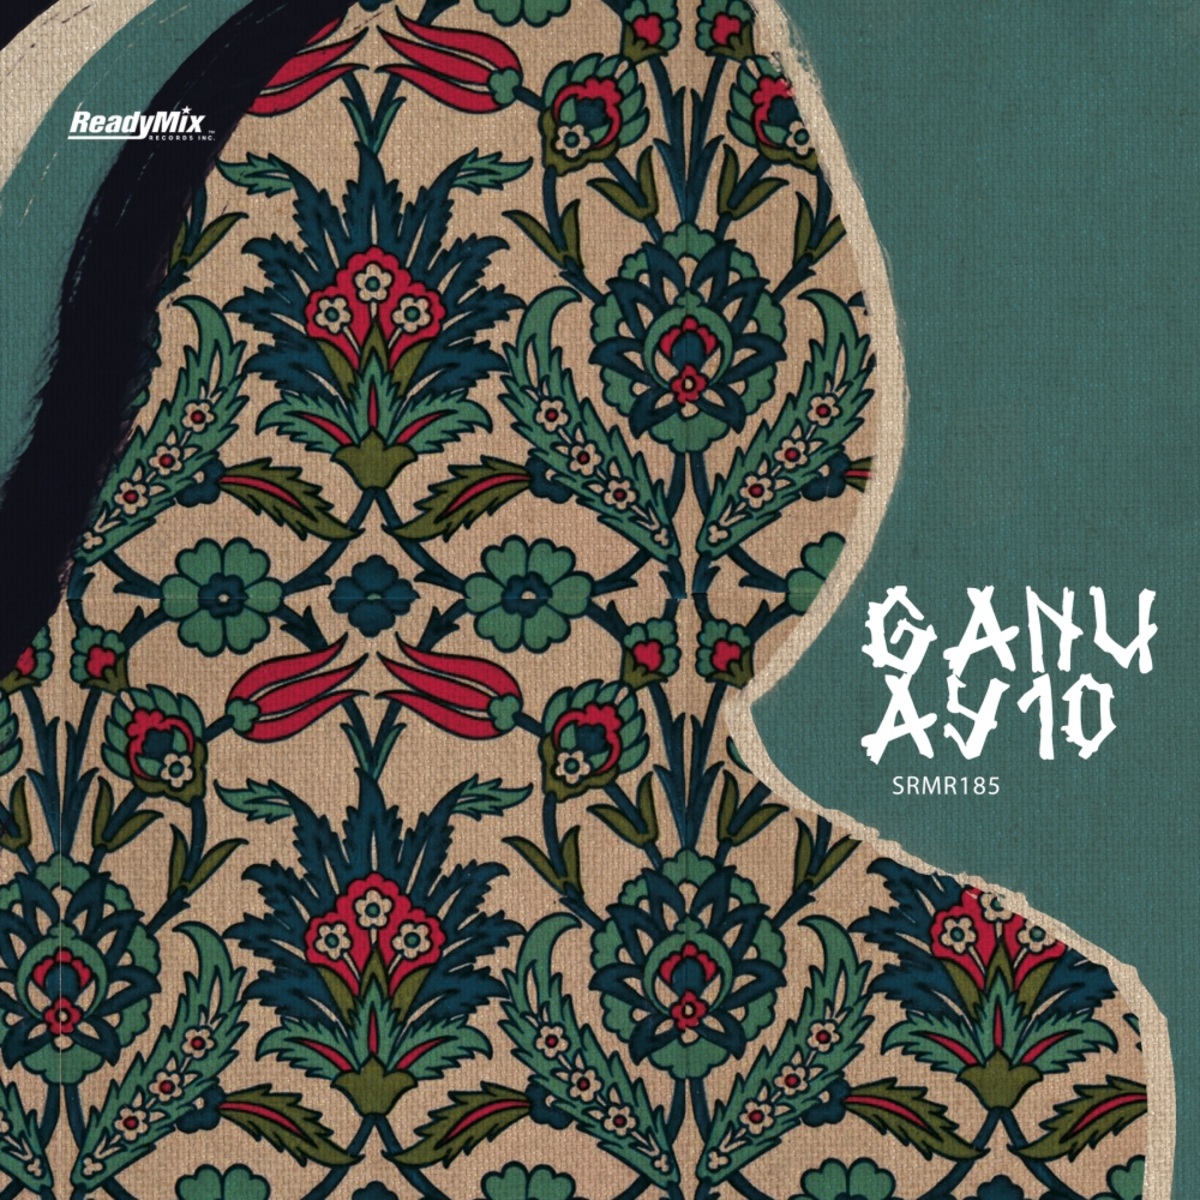 Ganu - AY10 / Ready Mix Records